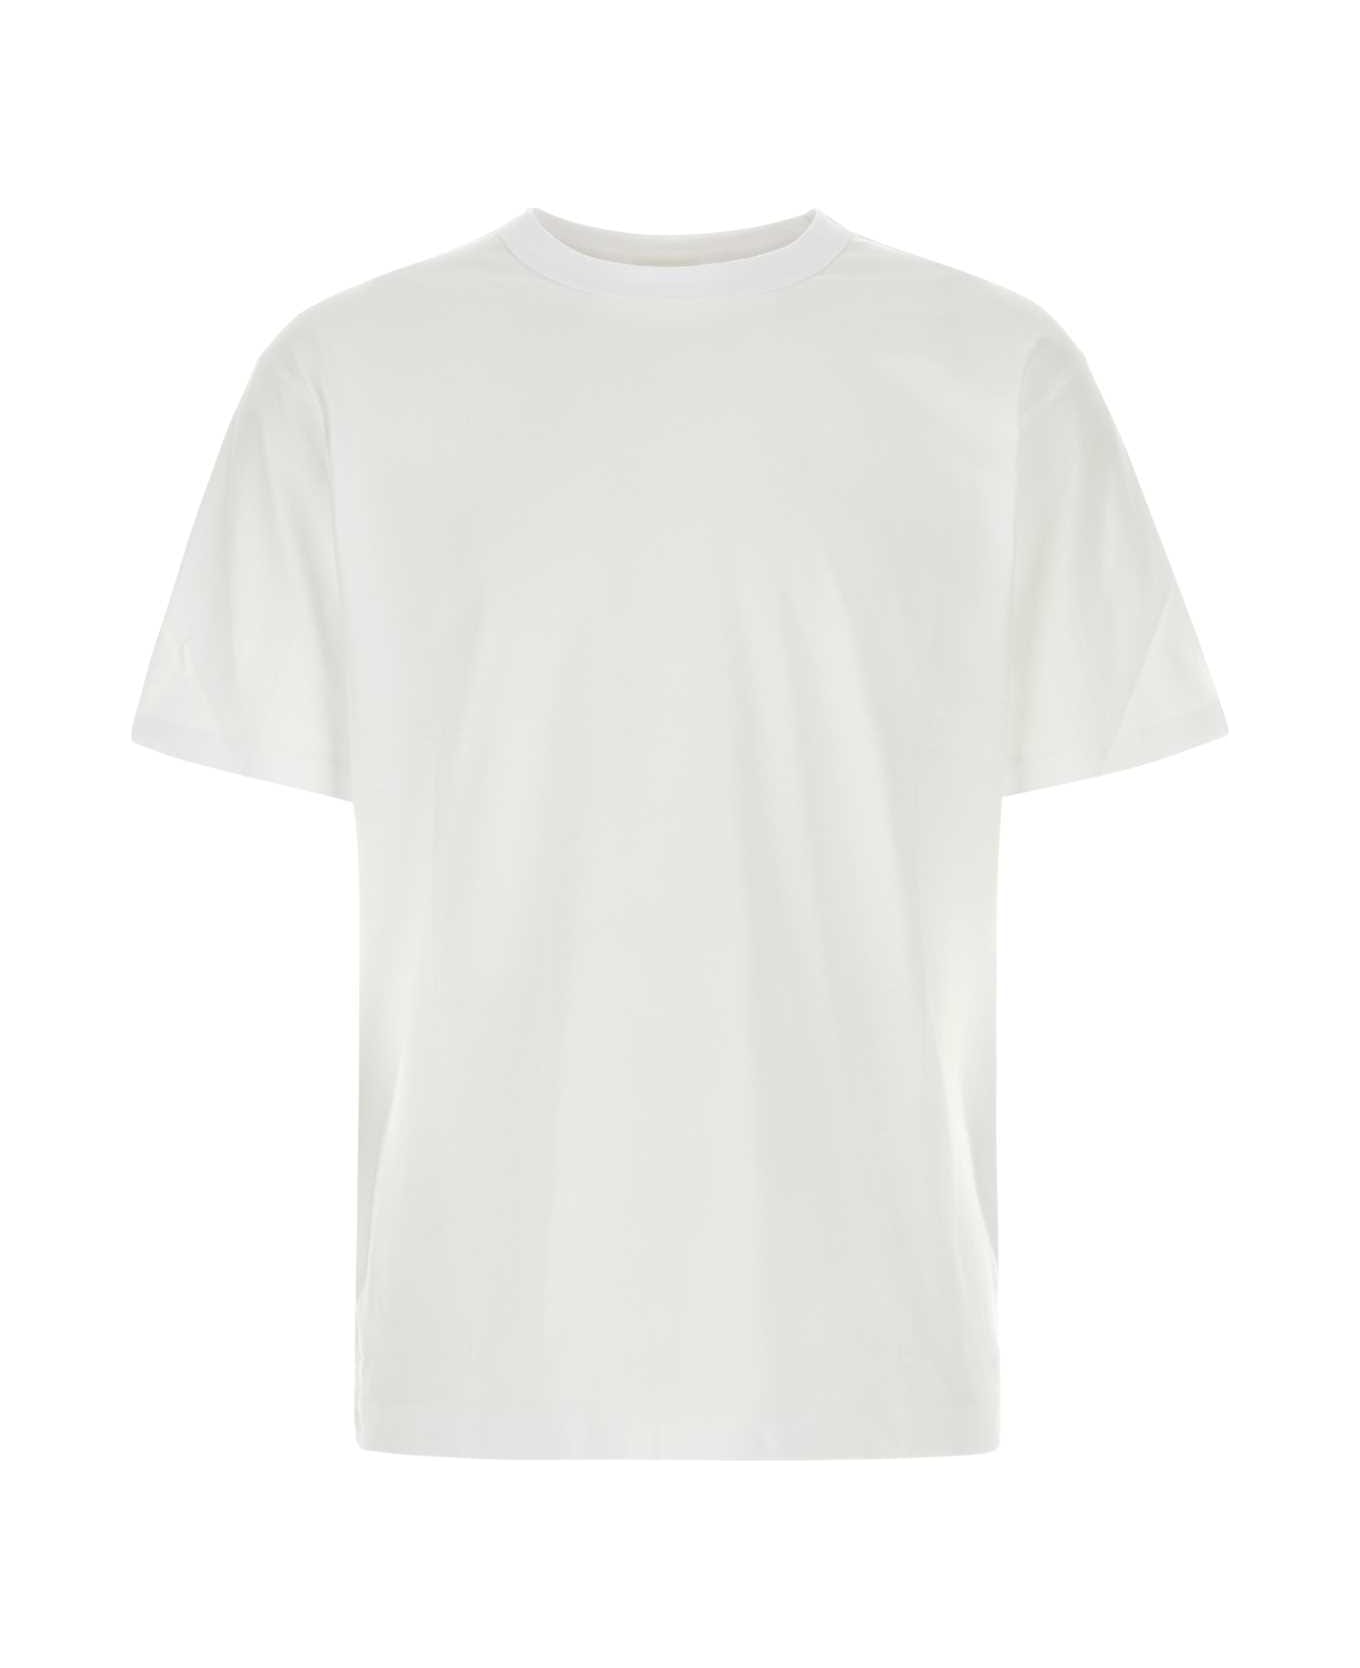 Dries Van Noten White Cotton Heer T-shirt - White シャツ